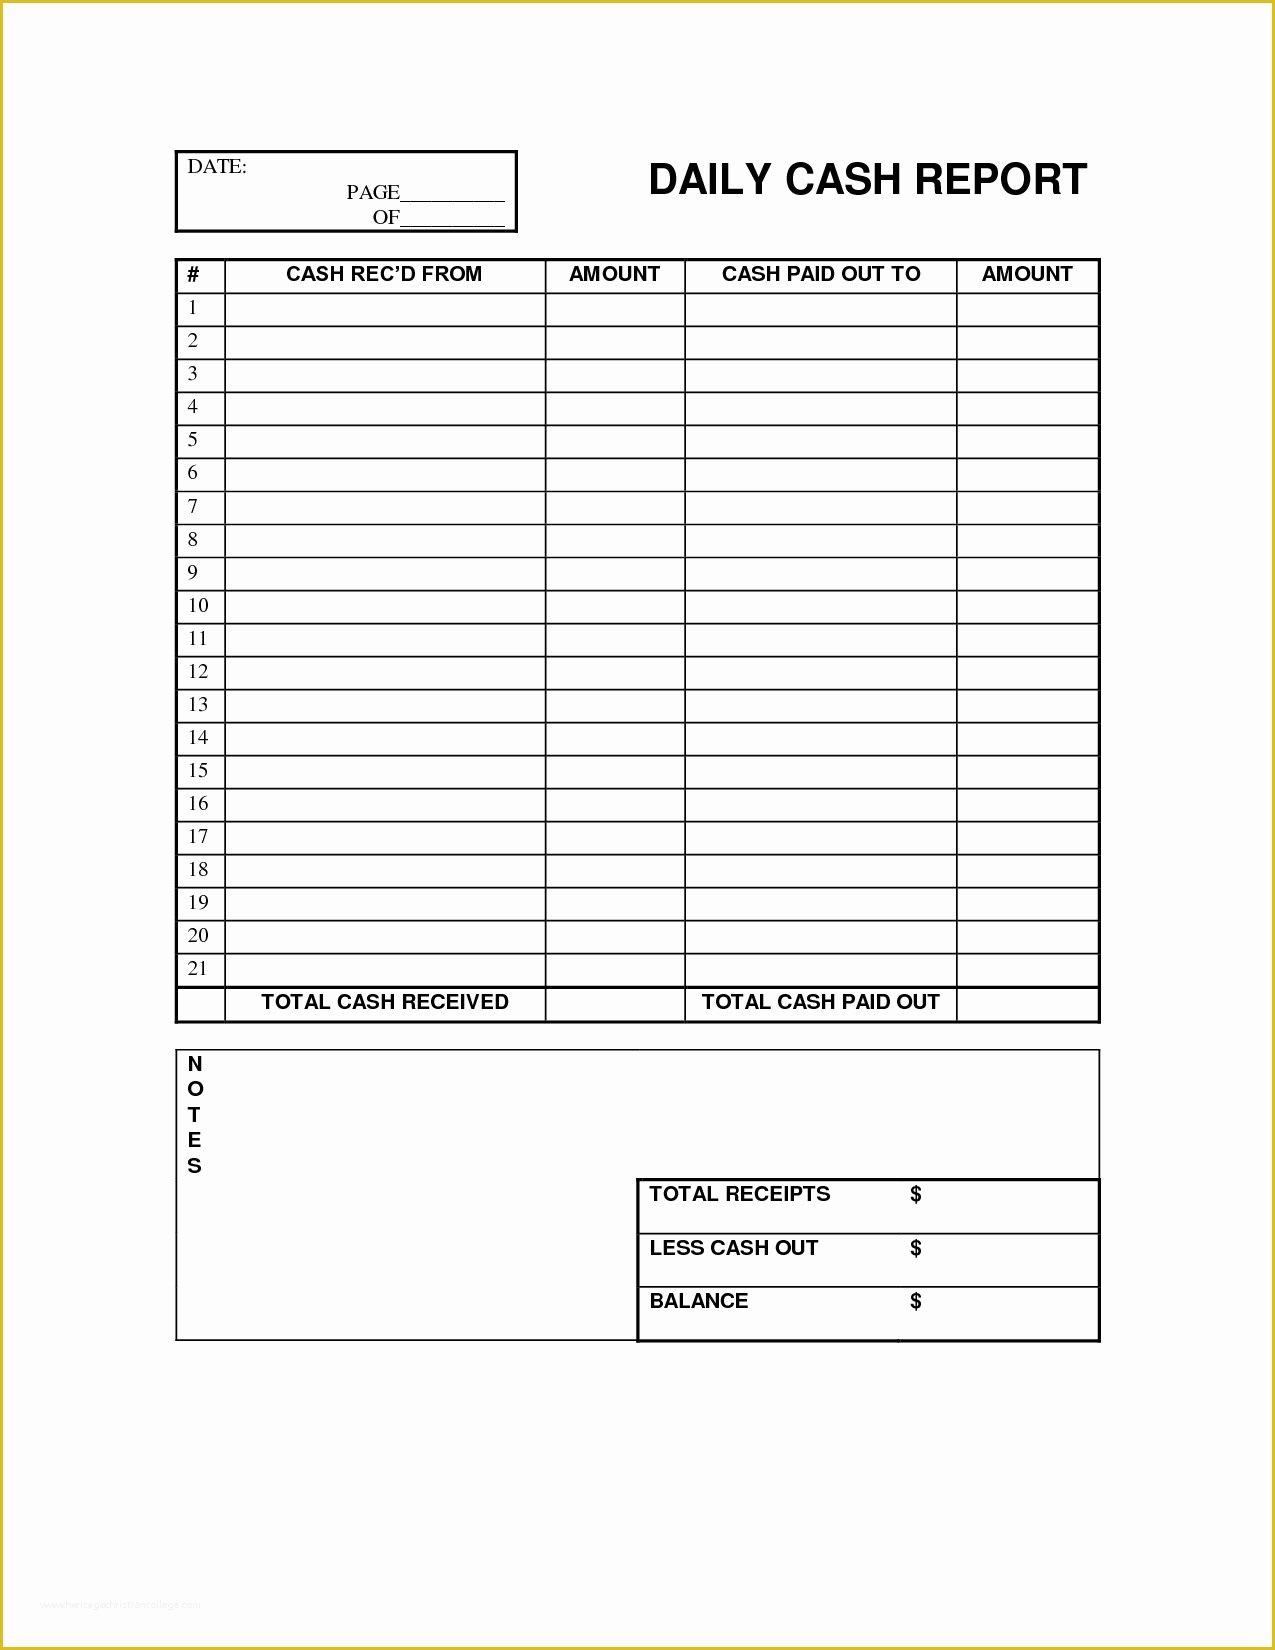 Cash Sheet Template Free Of Daily Cash Register Balance Sheet Template